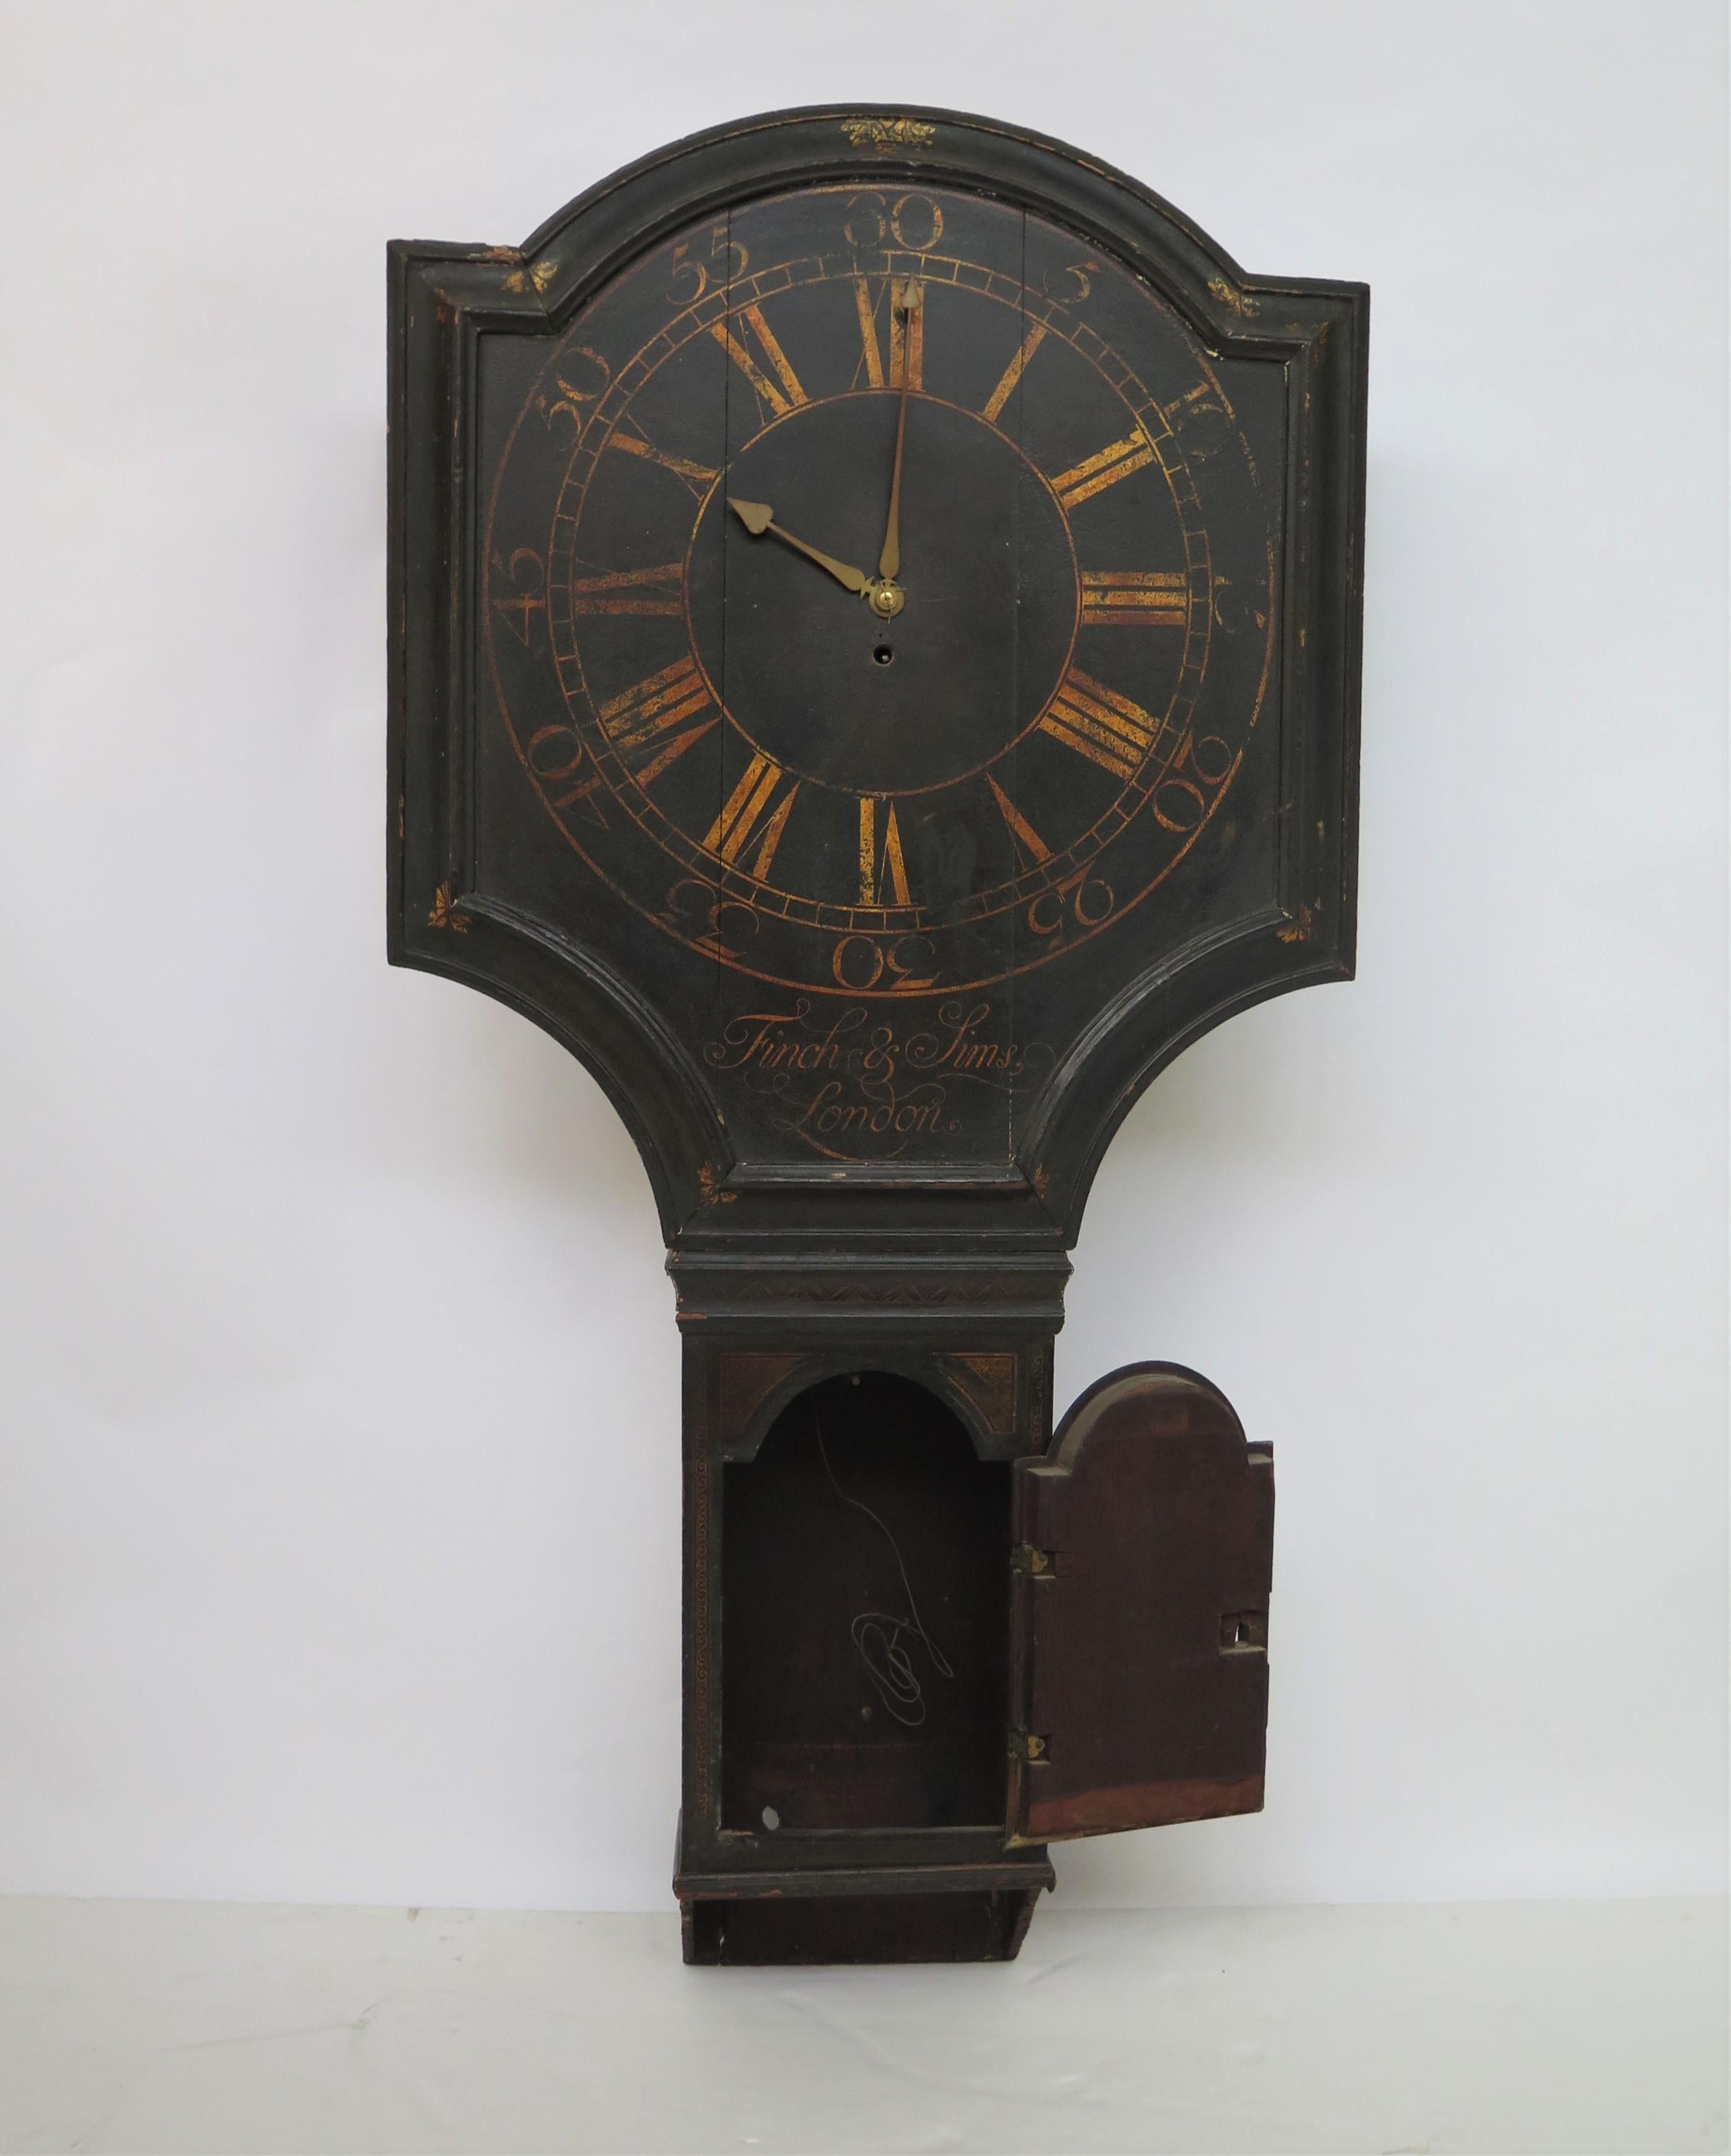 English Act of Parliament Wall Clock / Tavern Clock 1